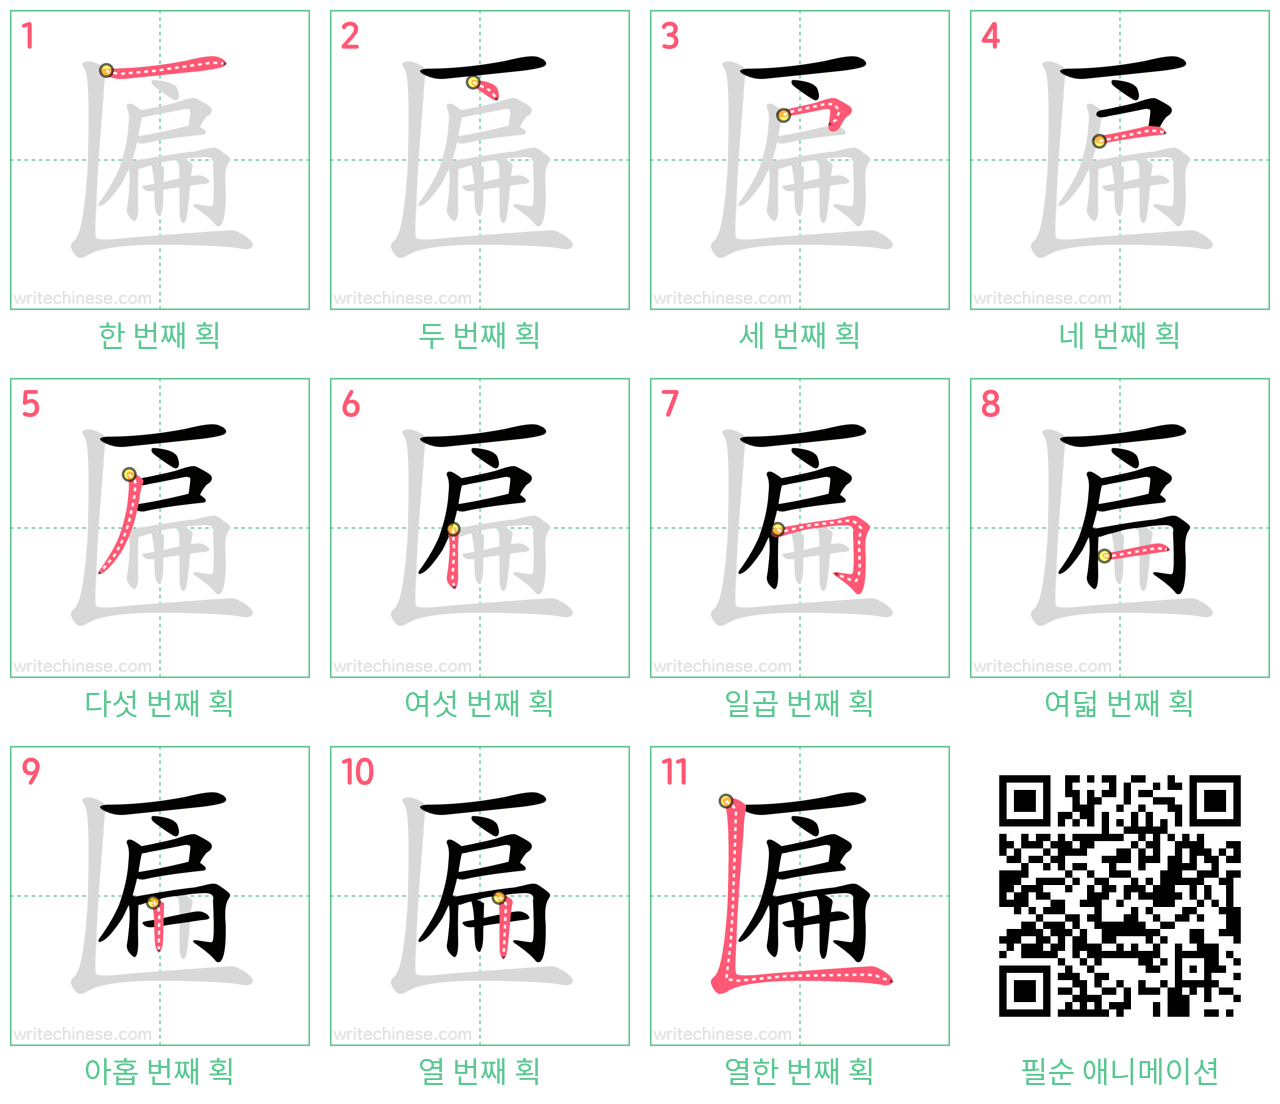 匾 step-by-step stroke order diagrams